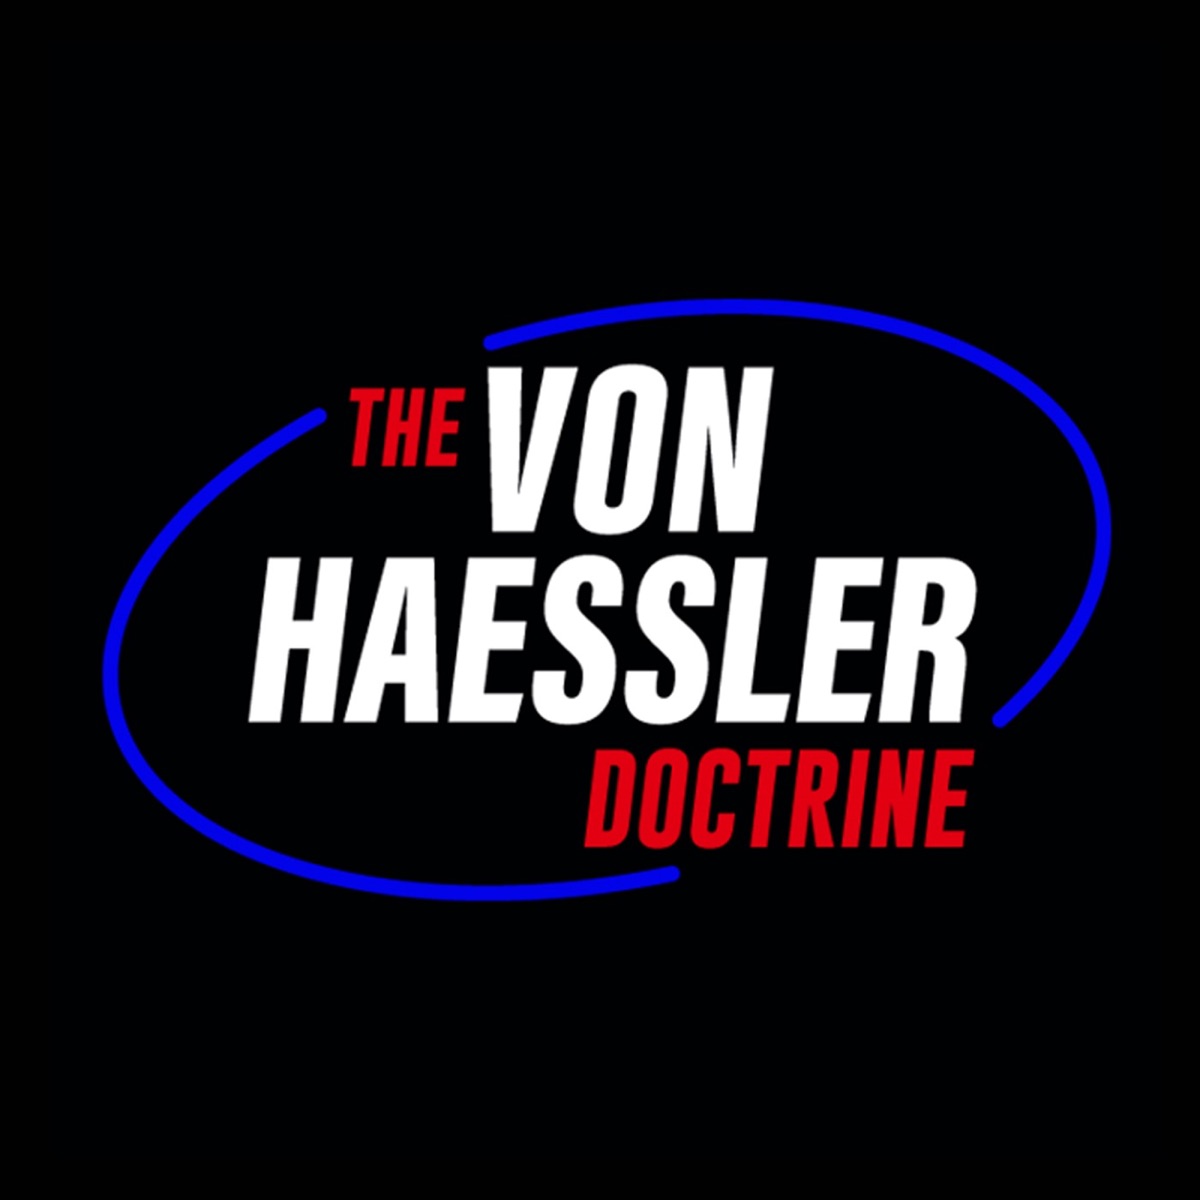 The Von Haessler Doctrine S12e152 Senate Hearing Sex The Von Haessler Doctrine Podcast 4267